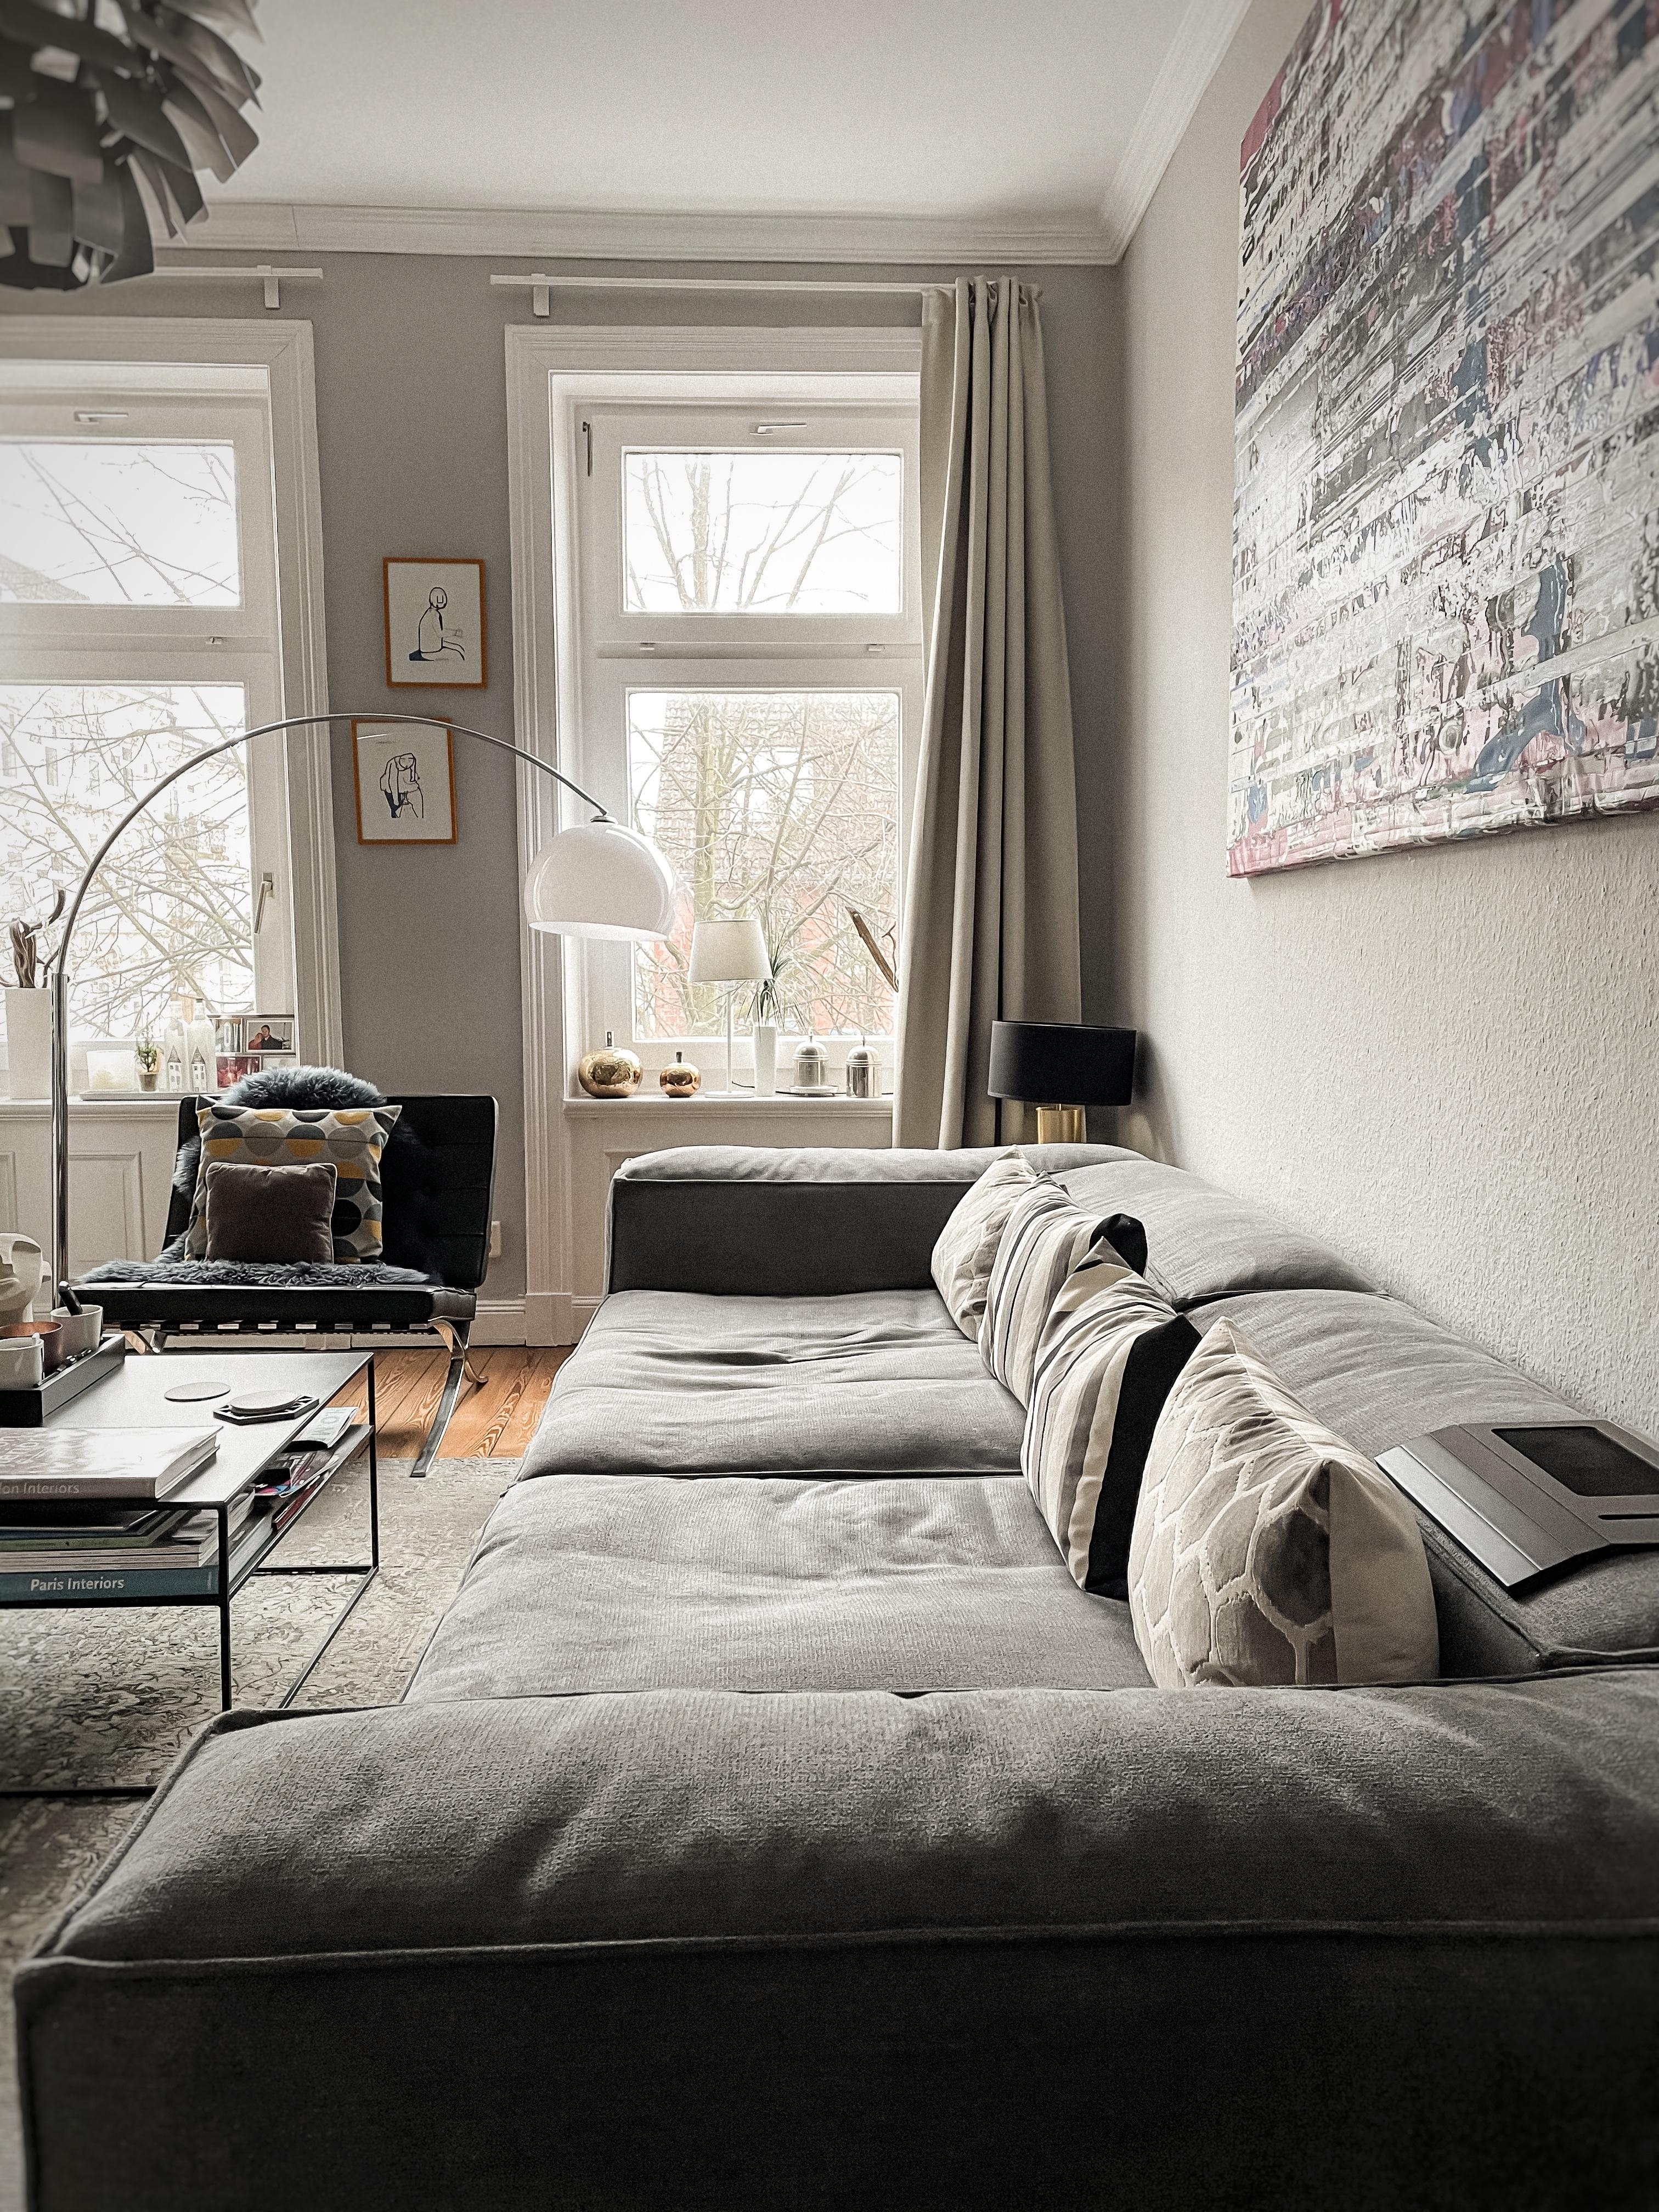 Bestes Versteck vor Eiswind #couch #couchstyle #danishdesign #atmine #interior #interieur #altbau #hygge